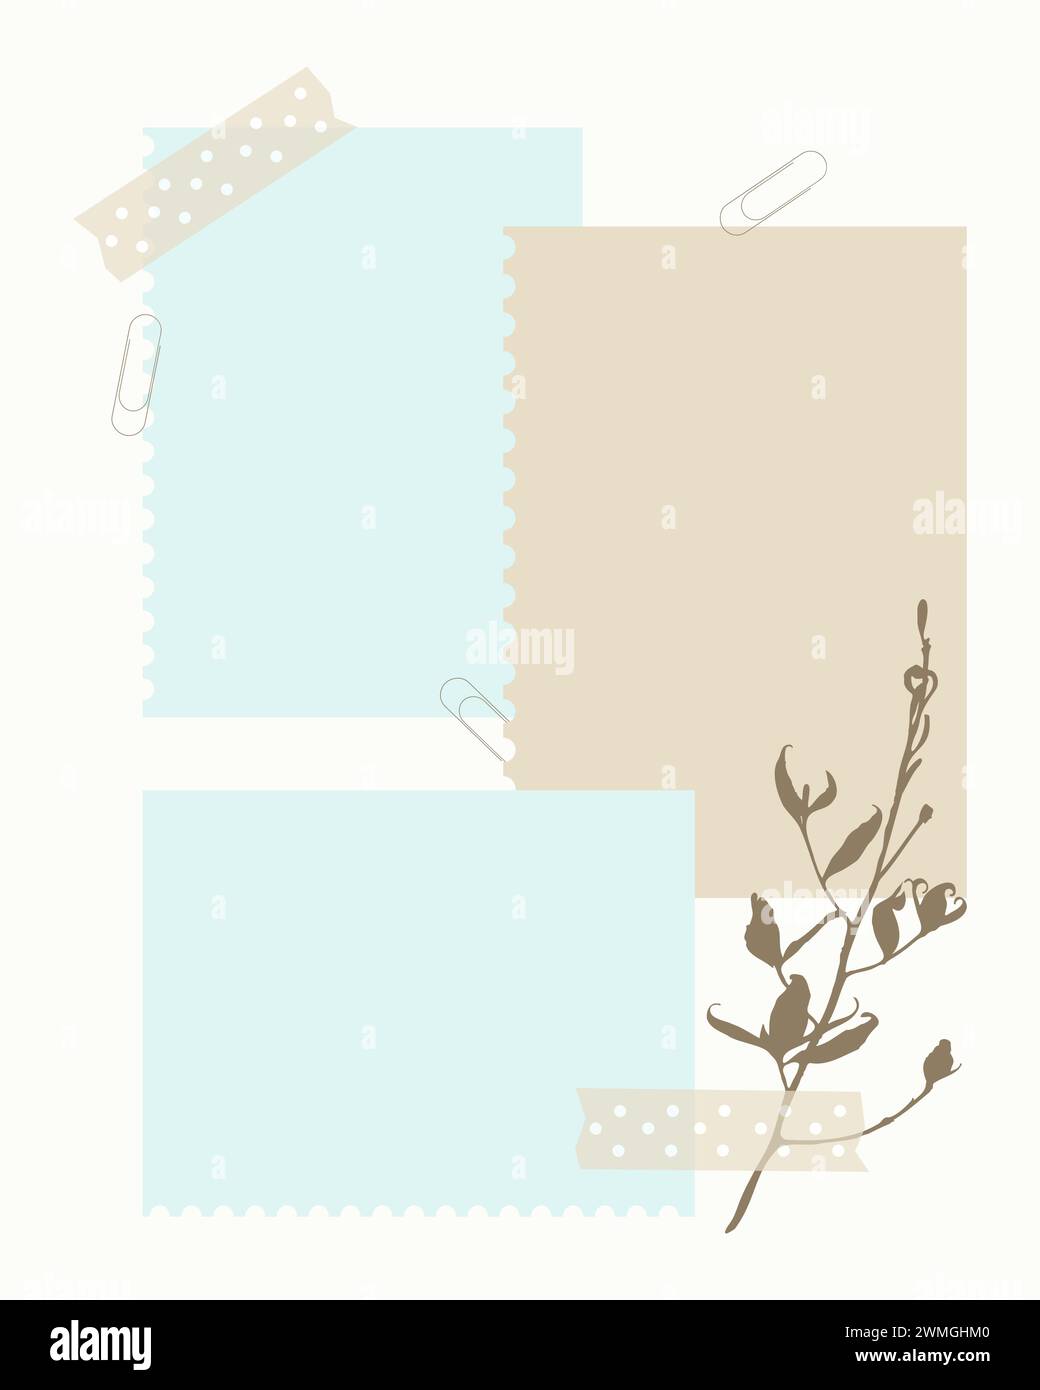 Mise en page de scrapbooking magnifiquement agencée avec des couches de papier de couleur pastel dans des tons bleus et beiges, orné d'une brindille botanique et sécurisé avec Illustration de Vecteur